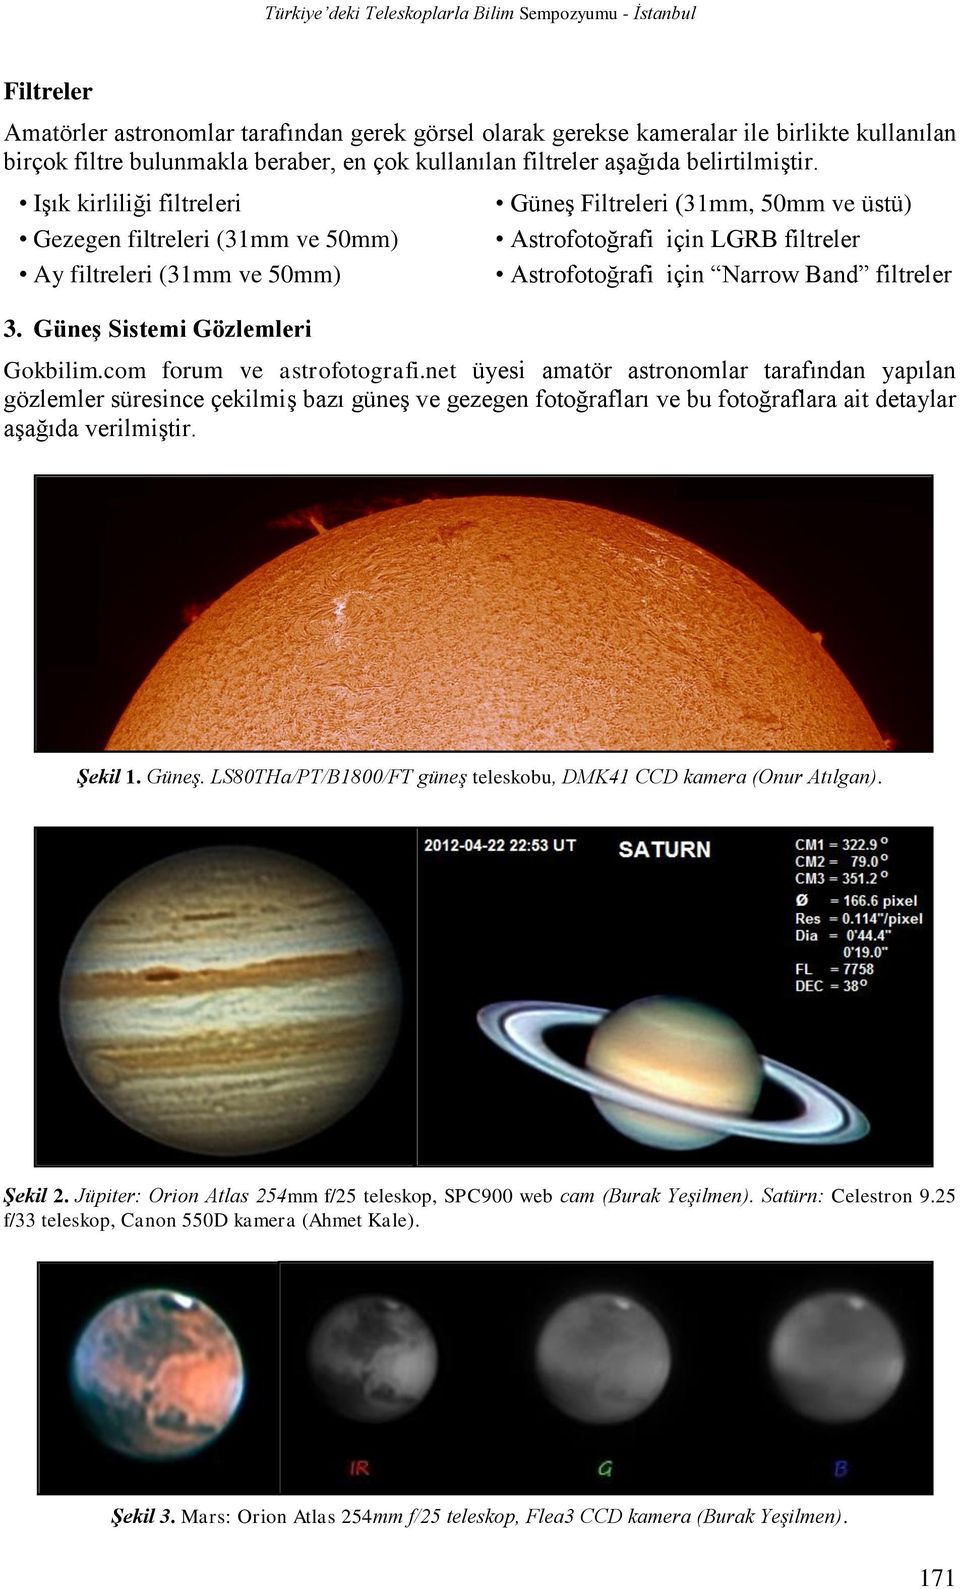 Güneş Sistemi Gözlemleri Güneş Filtreleri (31mm, 50mm ve üstü) Astrofotoğrafi için LGRB filtreler Astrofotoğrafi için Narrow Band filtreler Gokbilim.com forum ve astrofotografi.